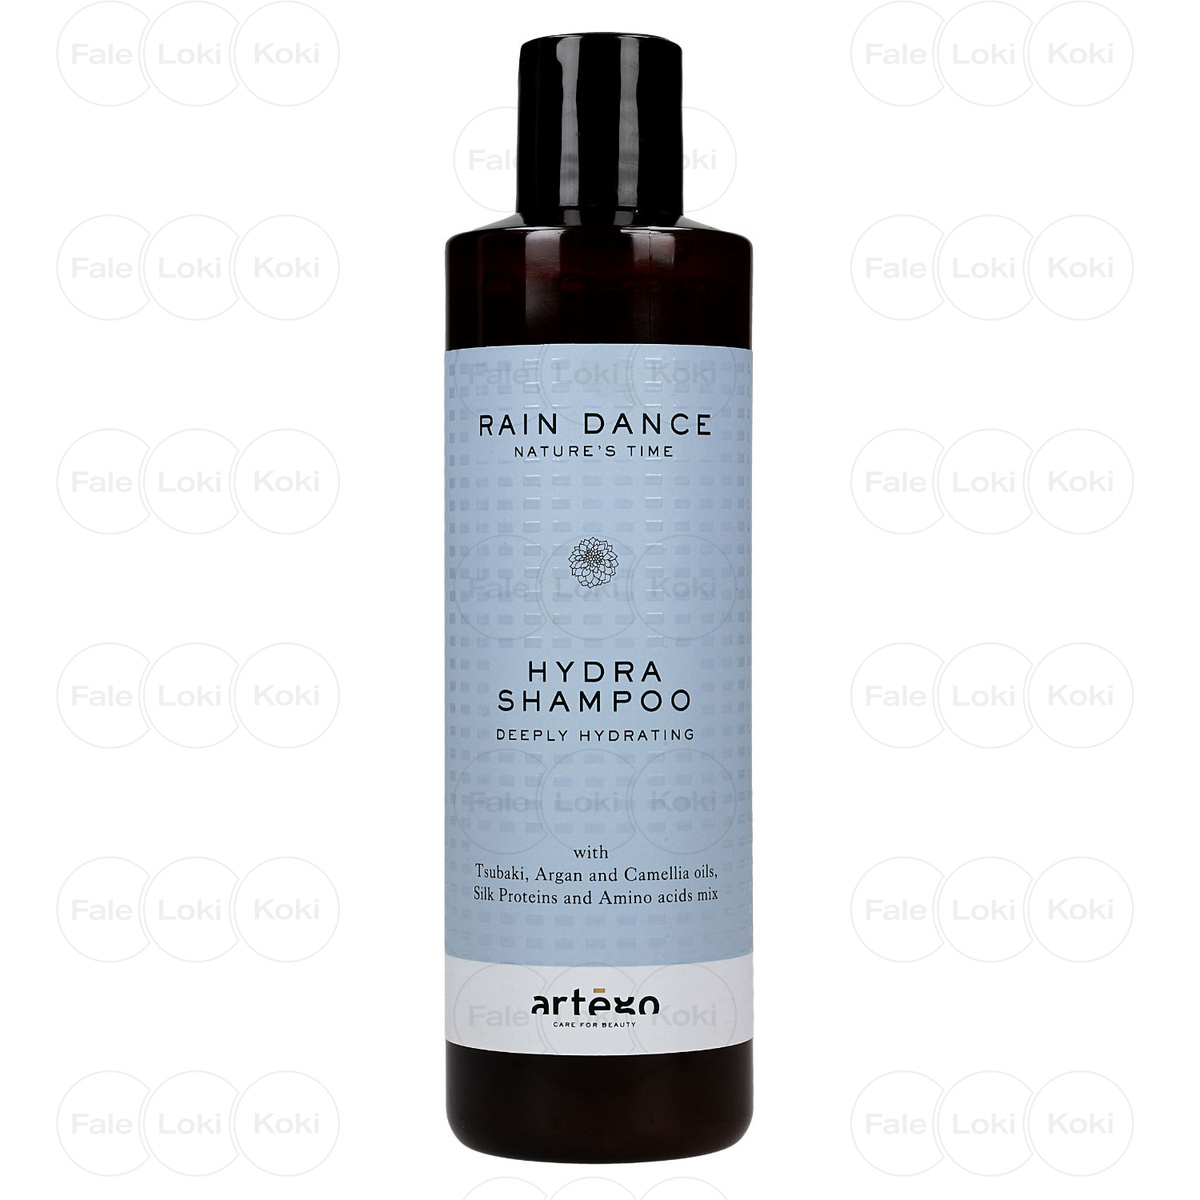 ARTEGO RAIN DANCE szampon intensywnie nawilżający Hydra Shampoo 250 ml